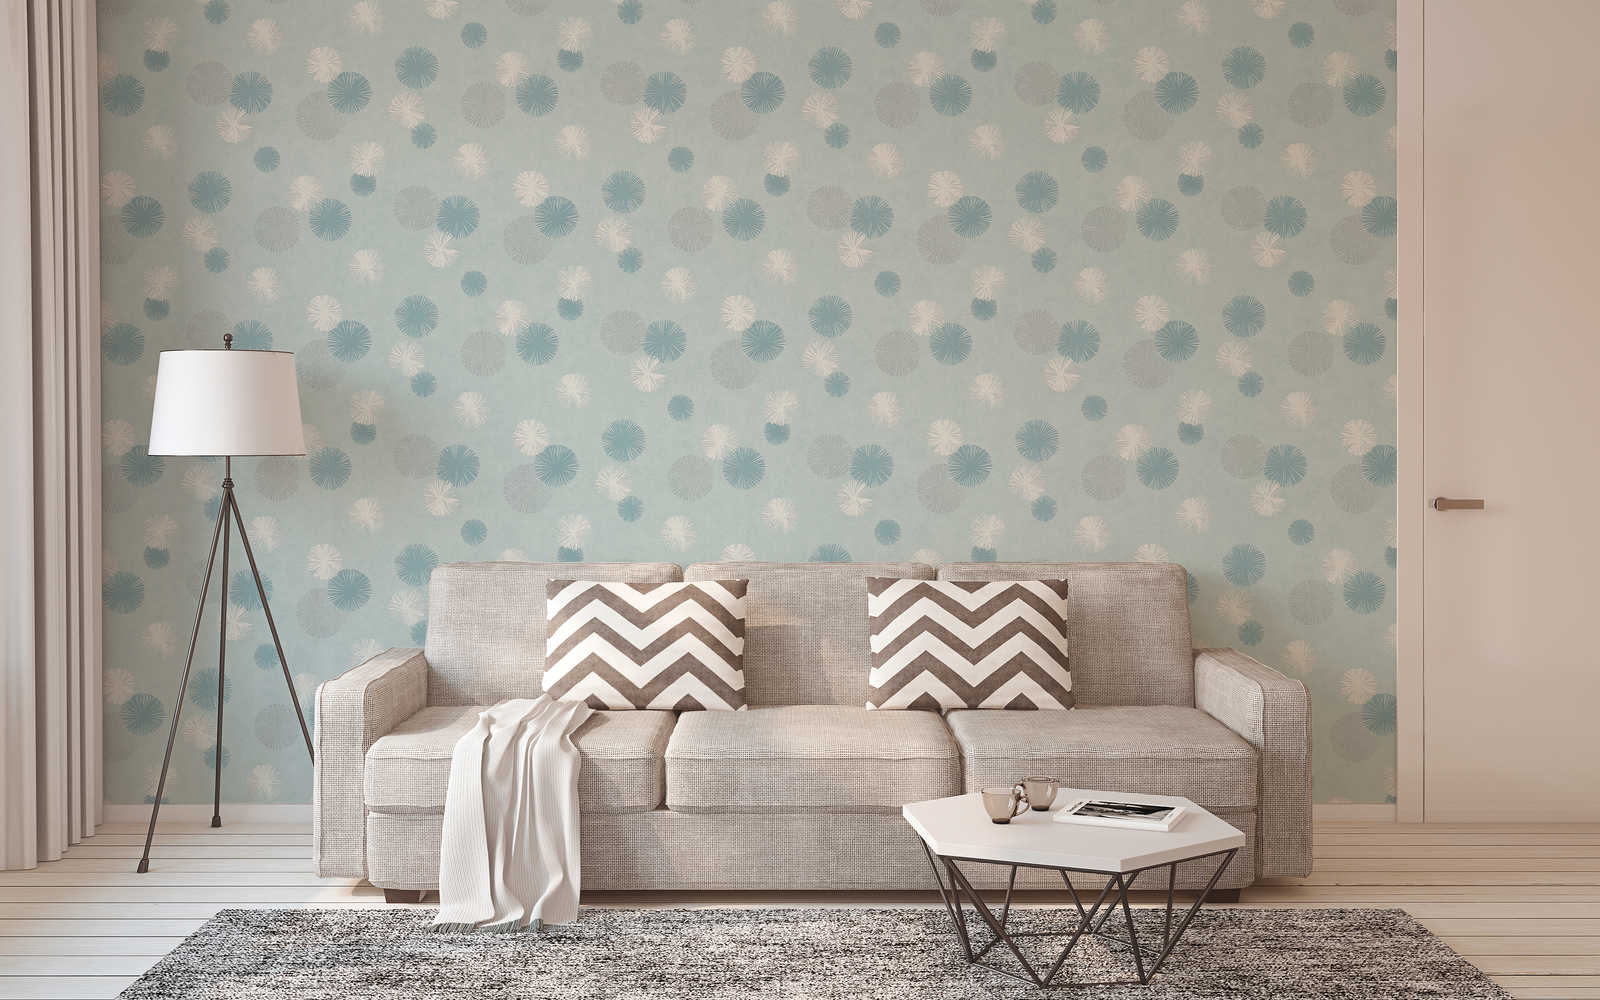             Mint green non-woven wallpaper with modern design - blue
        